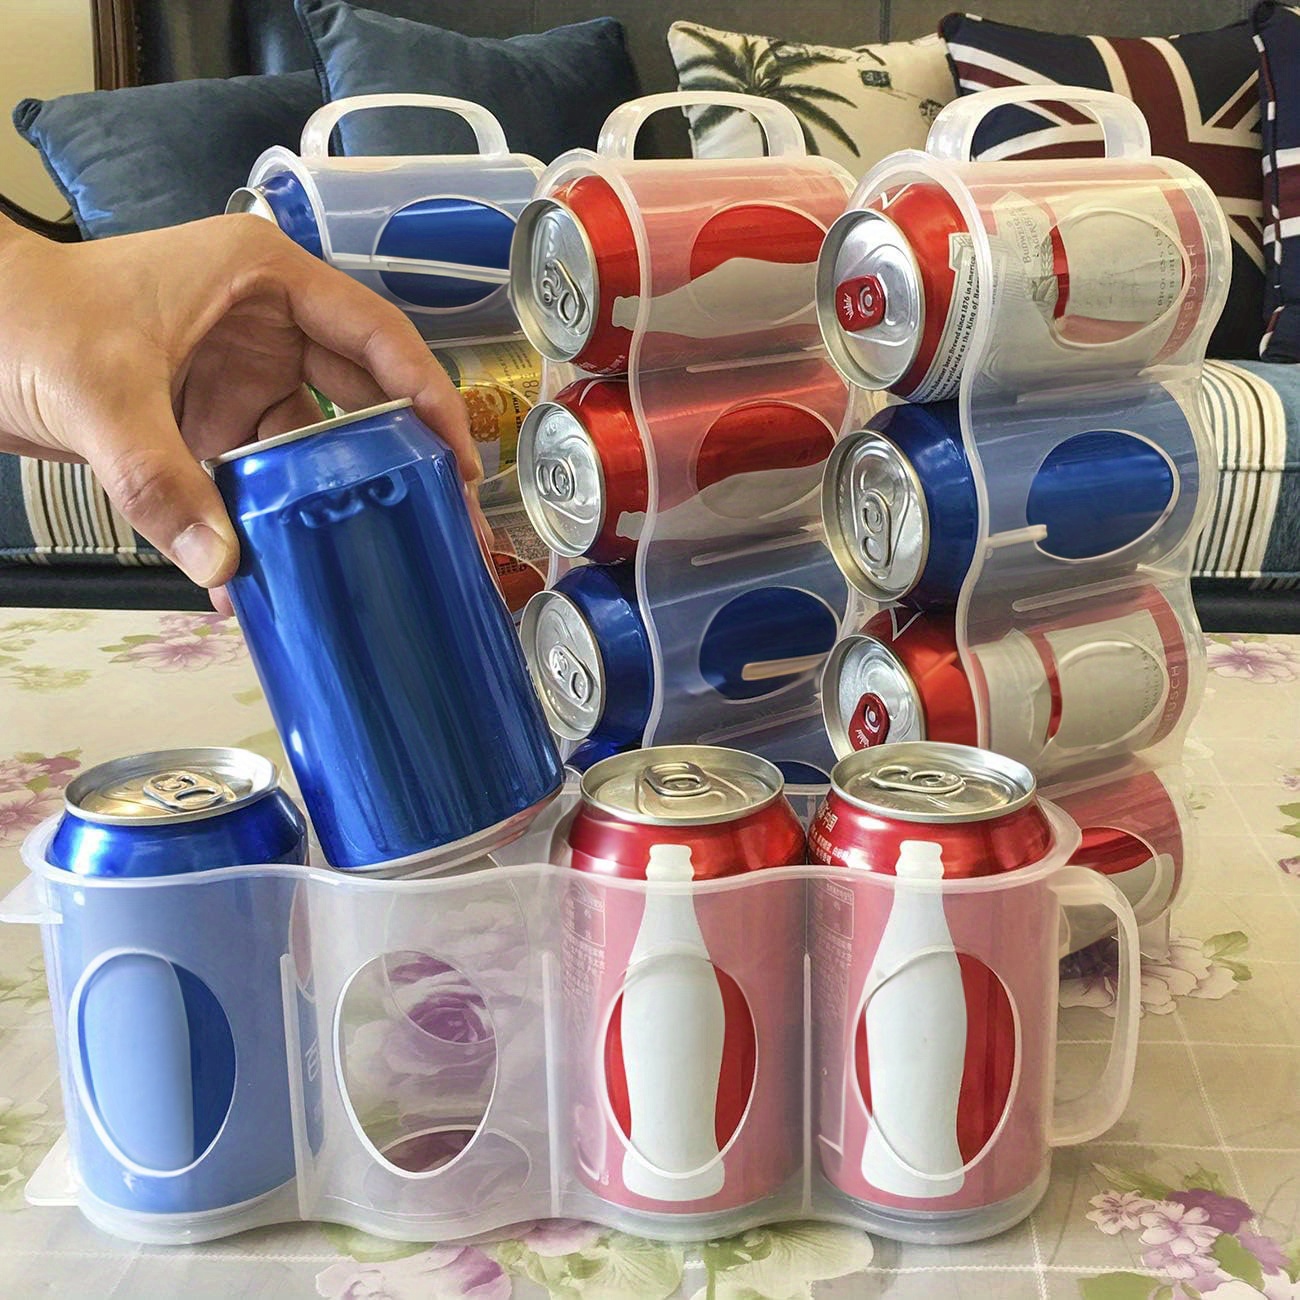  Dispensador de latas de soda para refrigerador de 3 filas,  organizador de latas de soda con deslizamiento automático - Organizador de  bebidas para nevera perfecto para refrescos, cerveza y otras bebidas